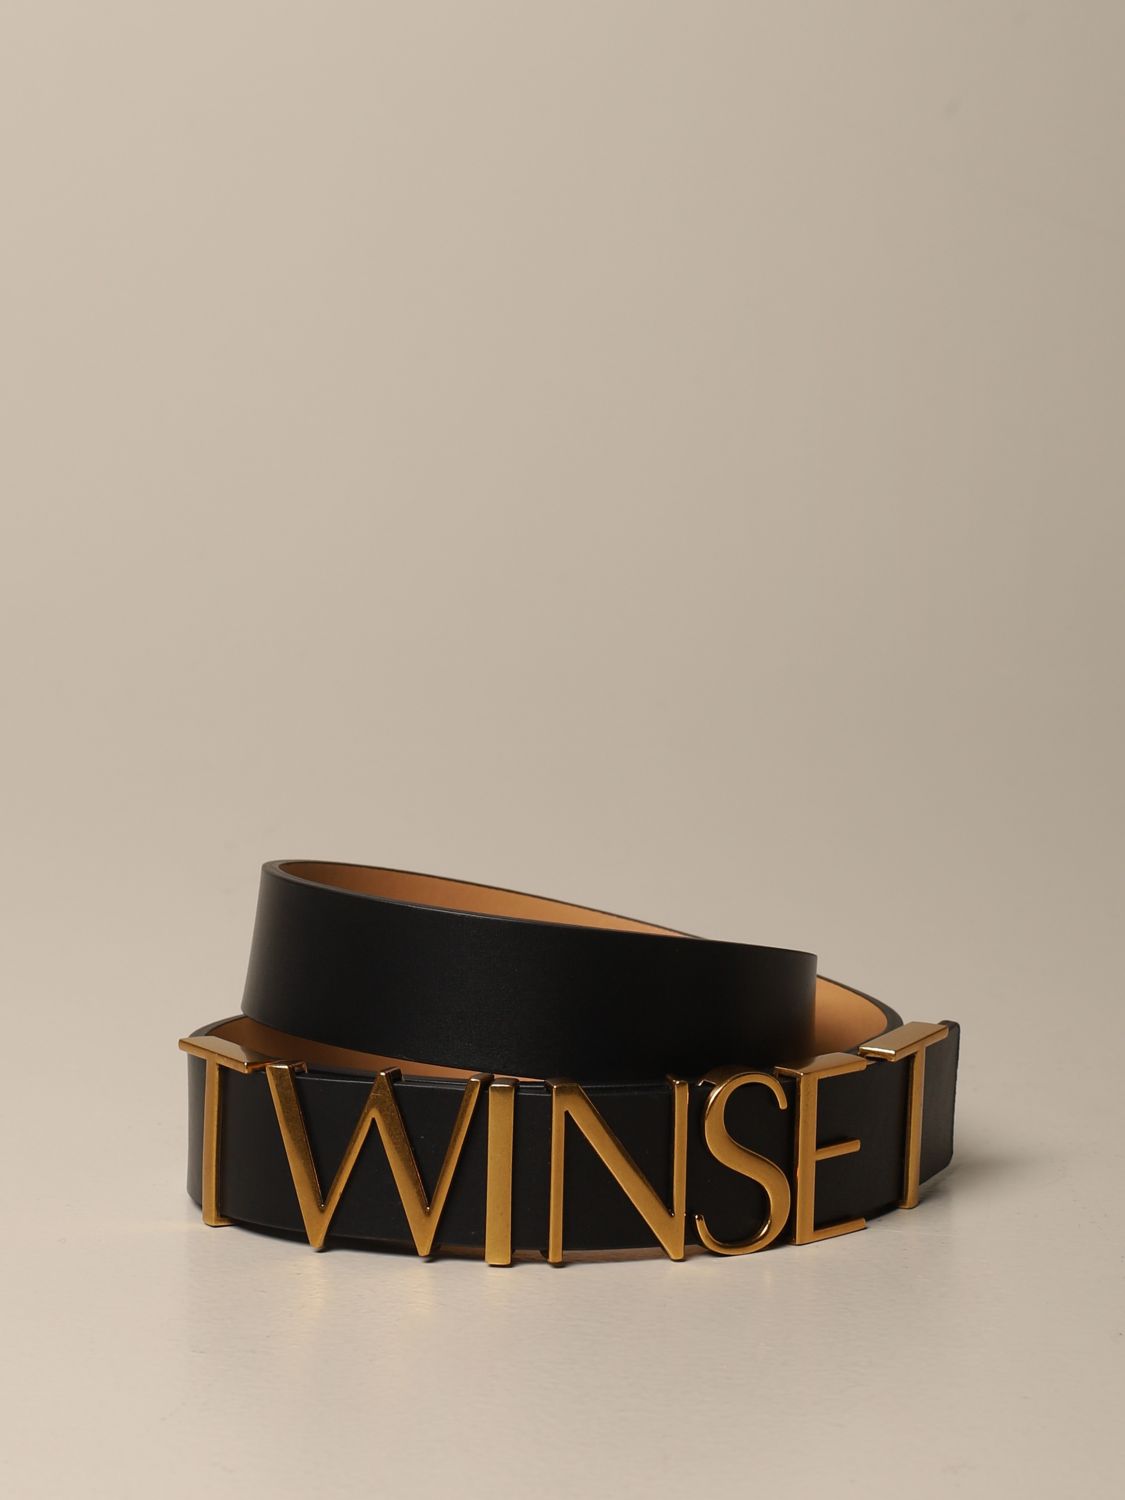 Twin-set leather belt with big logo lettering | Belt Twin Set Women ...